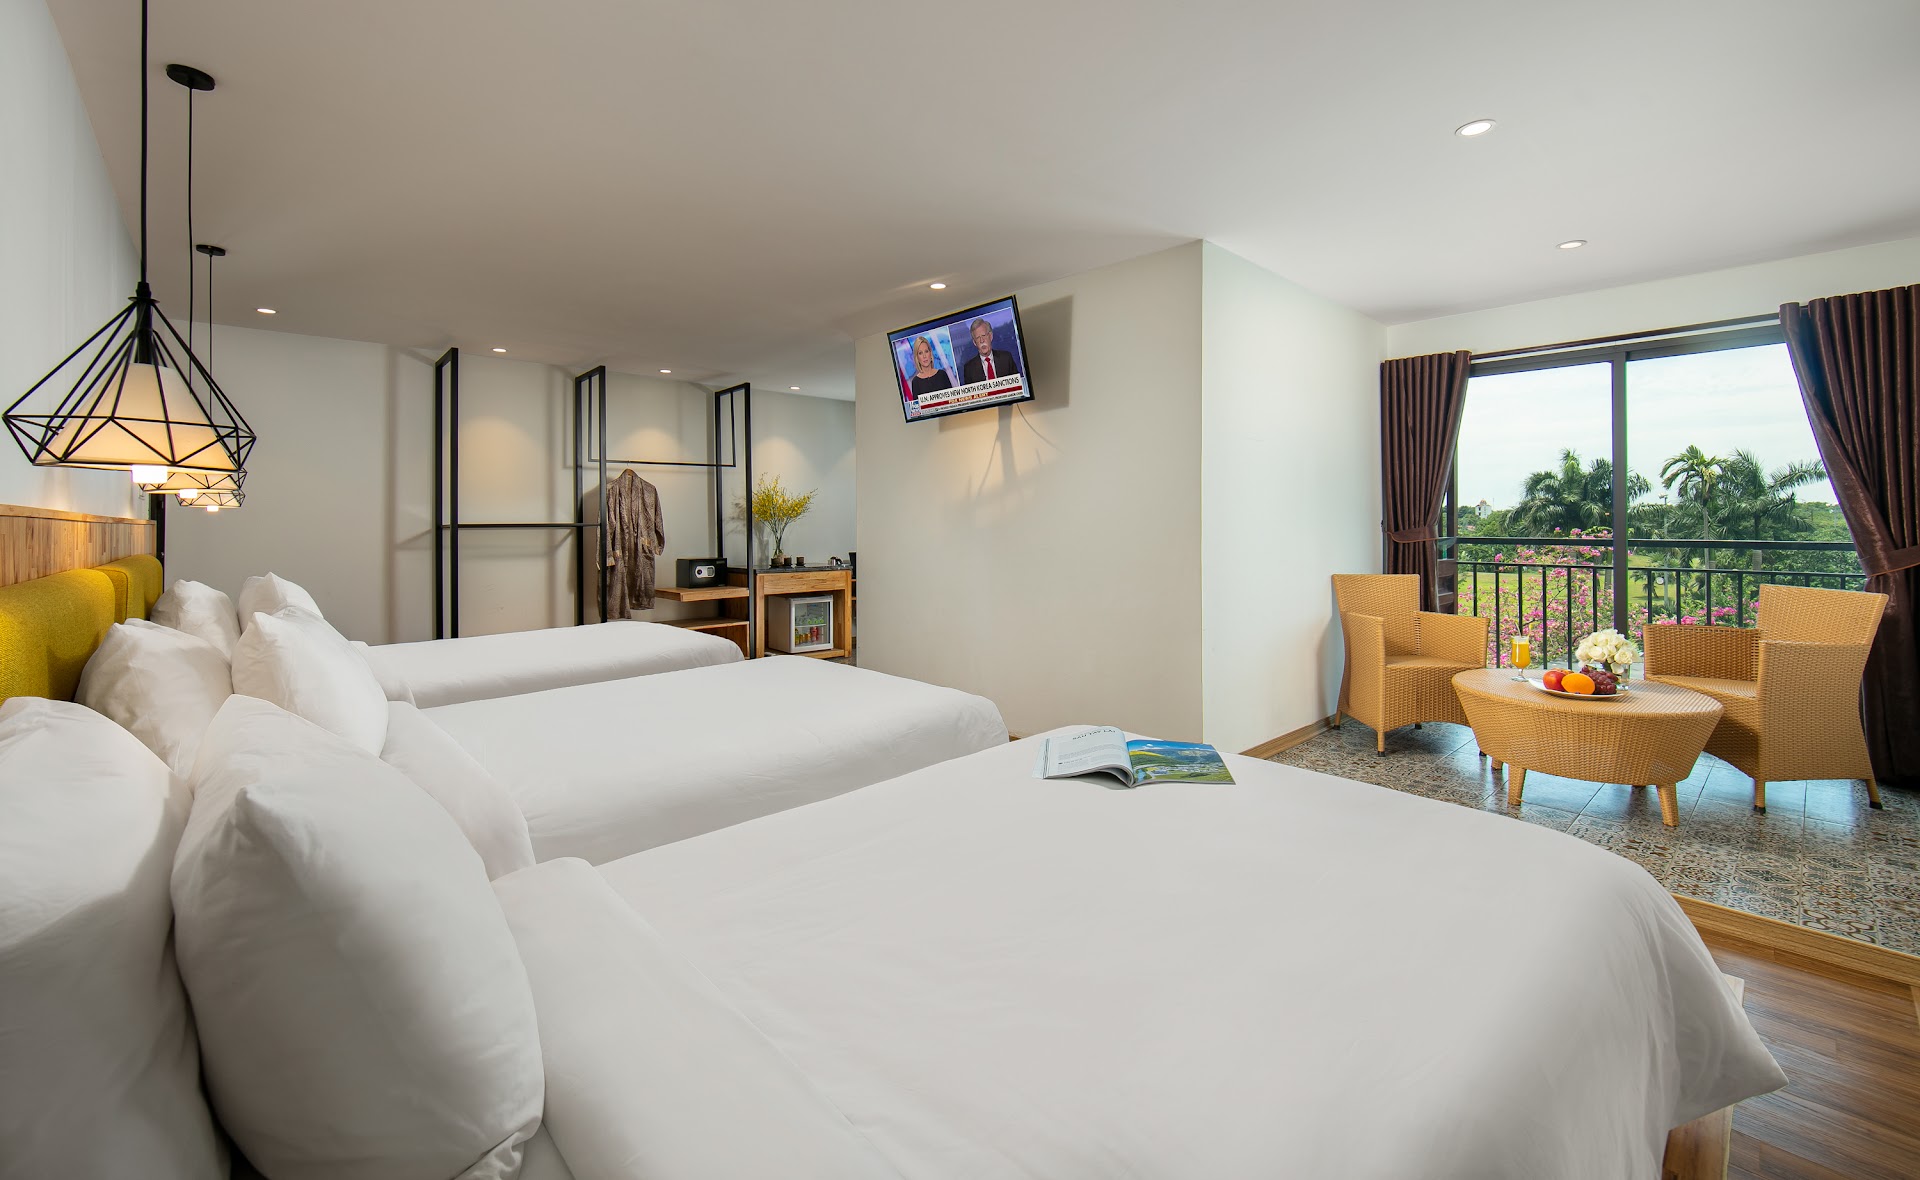 Asean Resort & Spa: khu nghỉ dưỡng bình yên nơi núi rừng